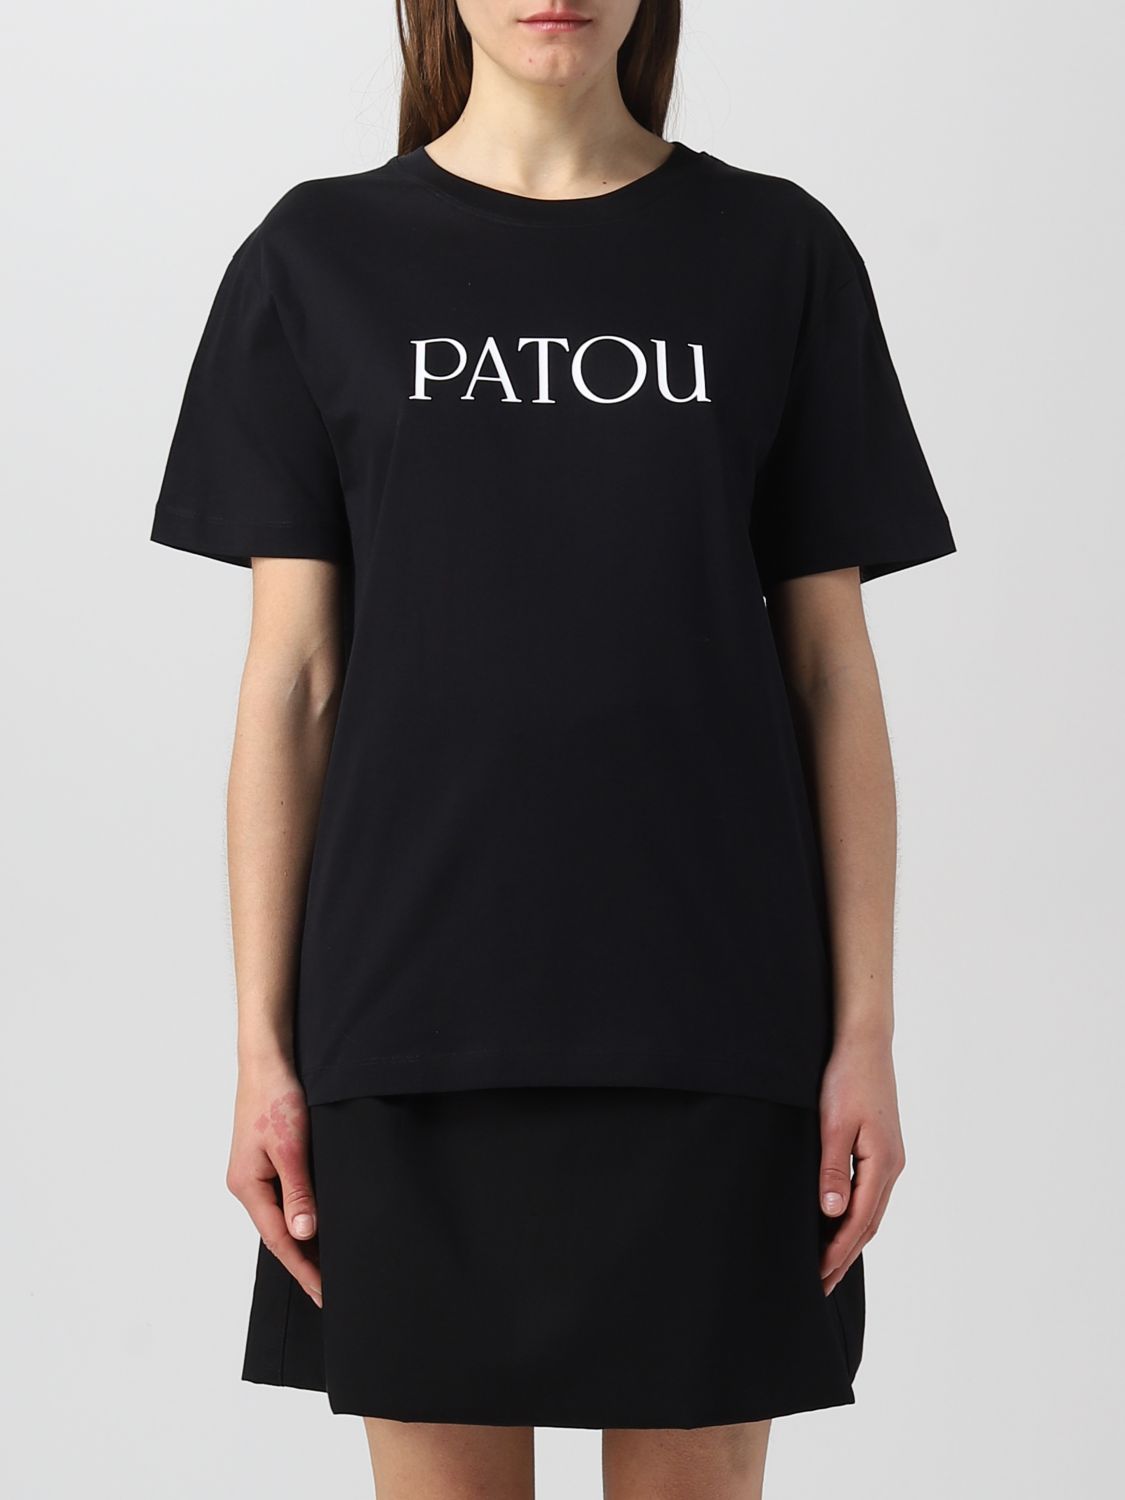 Patou T-shirt  Woman In Black